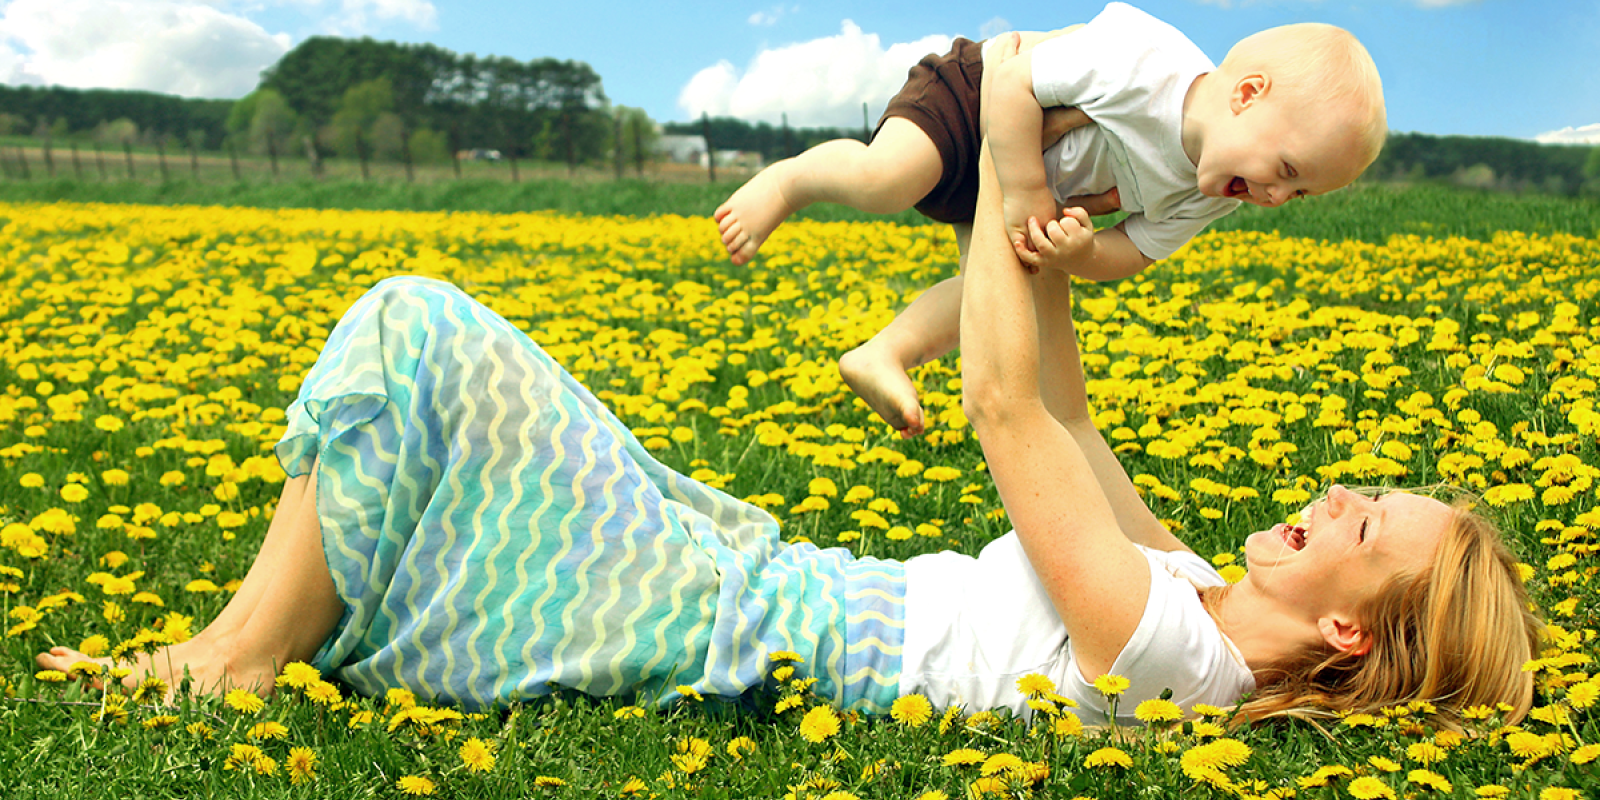 Glückliche alleinerziehende Mutter liegt in einer Blumenwiese und hält ihr lachendes Kind in die Luft